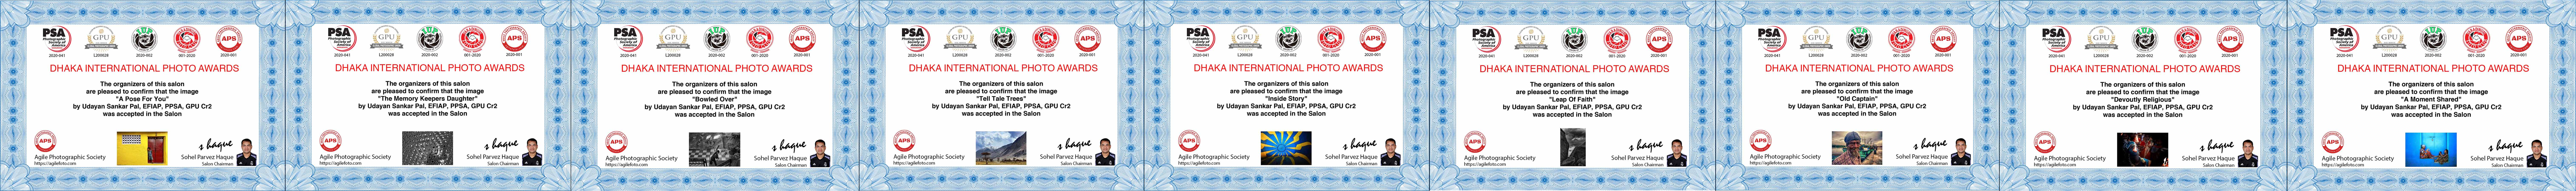 Dhaka International Photo Awards-2020